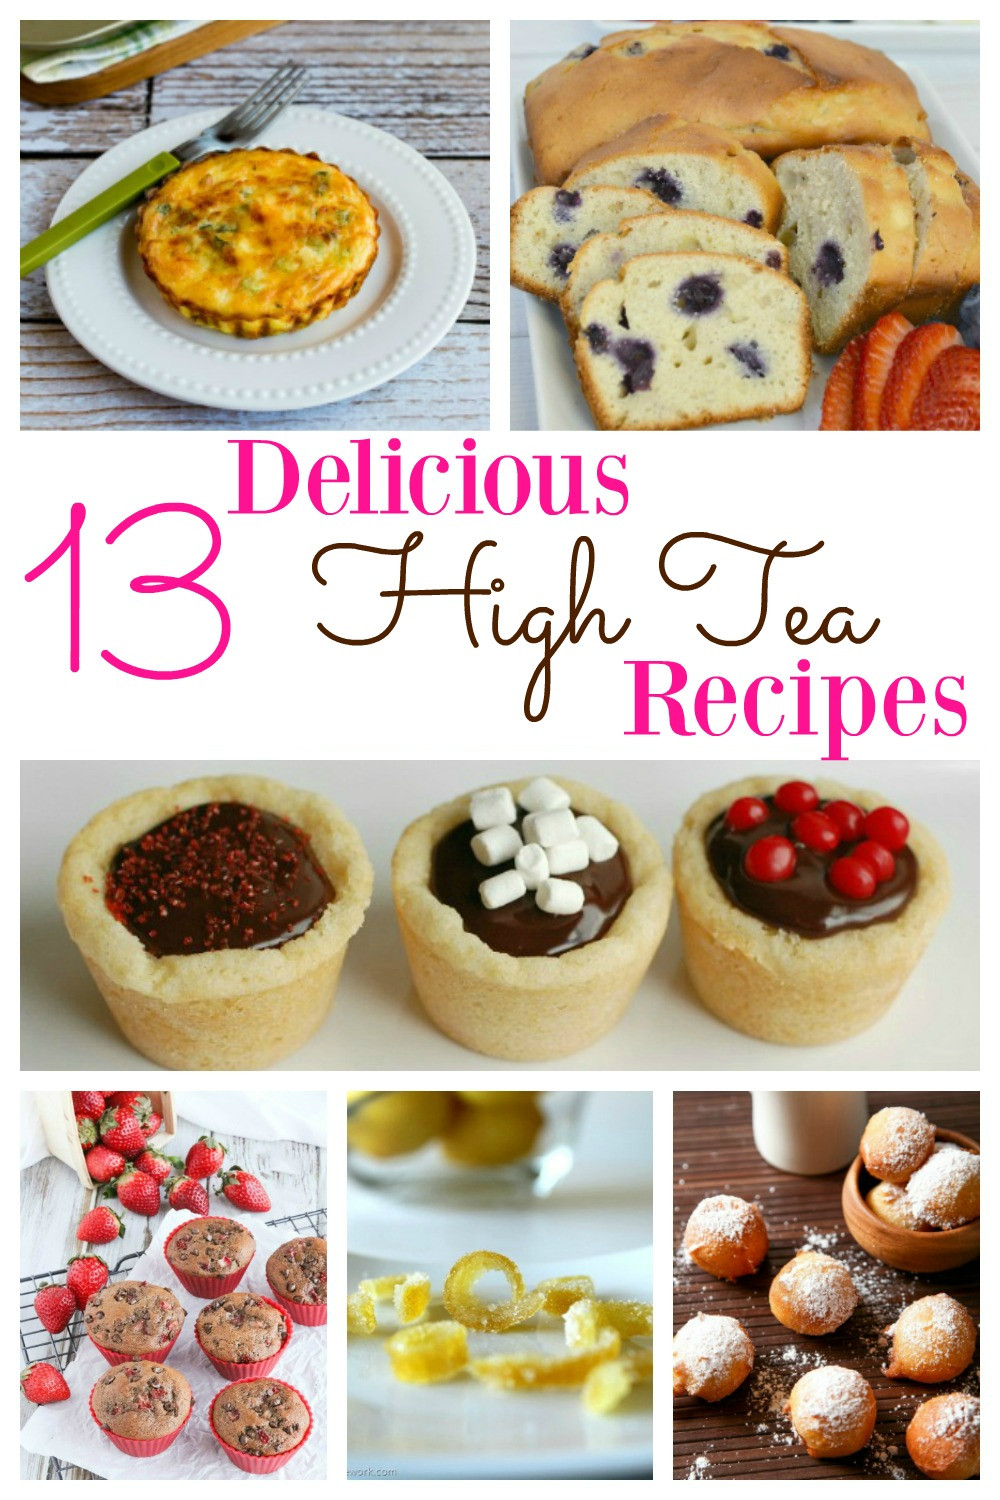 Tea Party Dessert Ideas
 Delicious High Tea Recipes